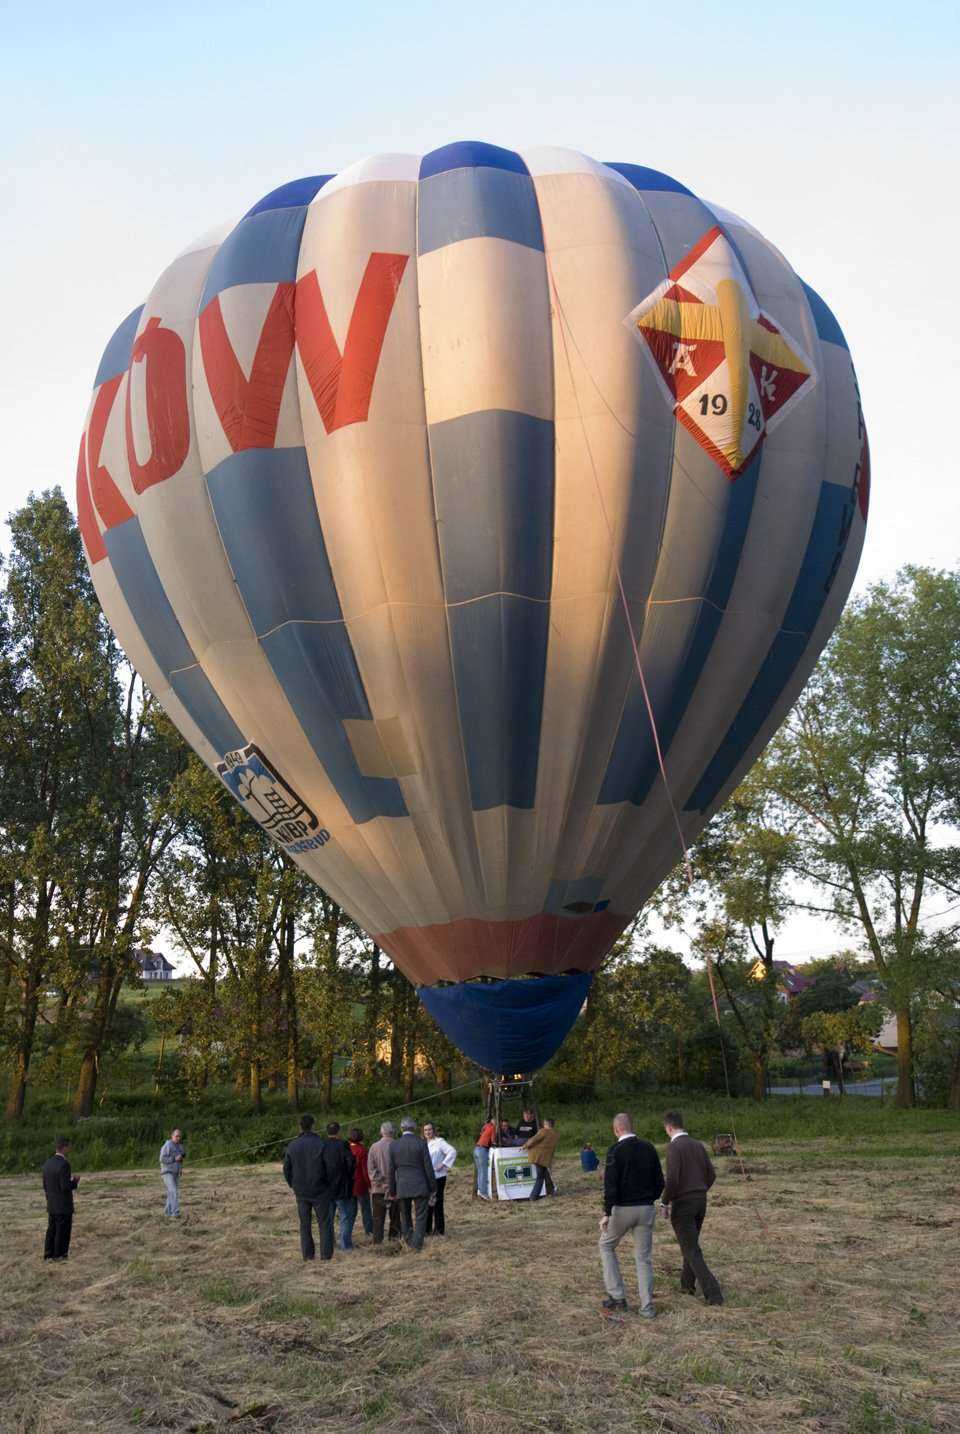 Atrakcja wieczornej biesiady - lot balonem na uwięzi sponsorowany przez firmę HERRENKNECHT AG